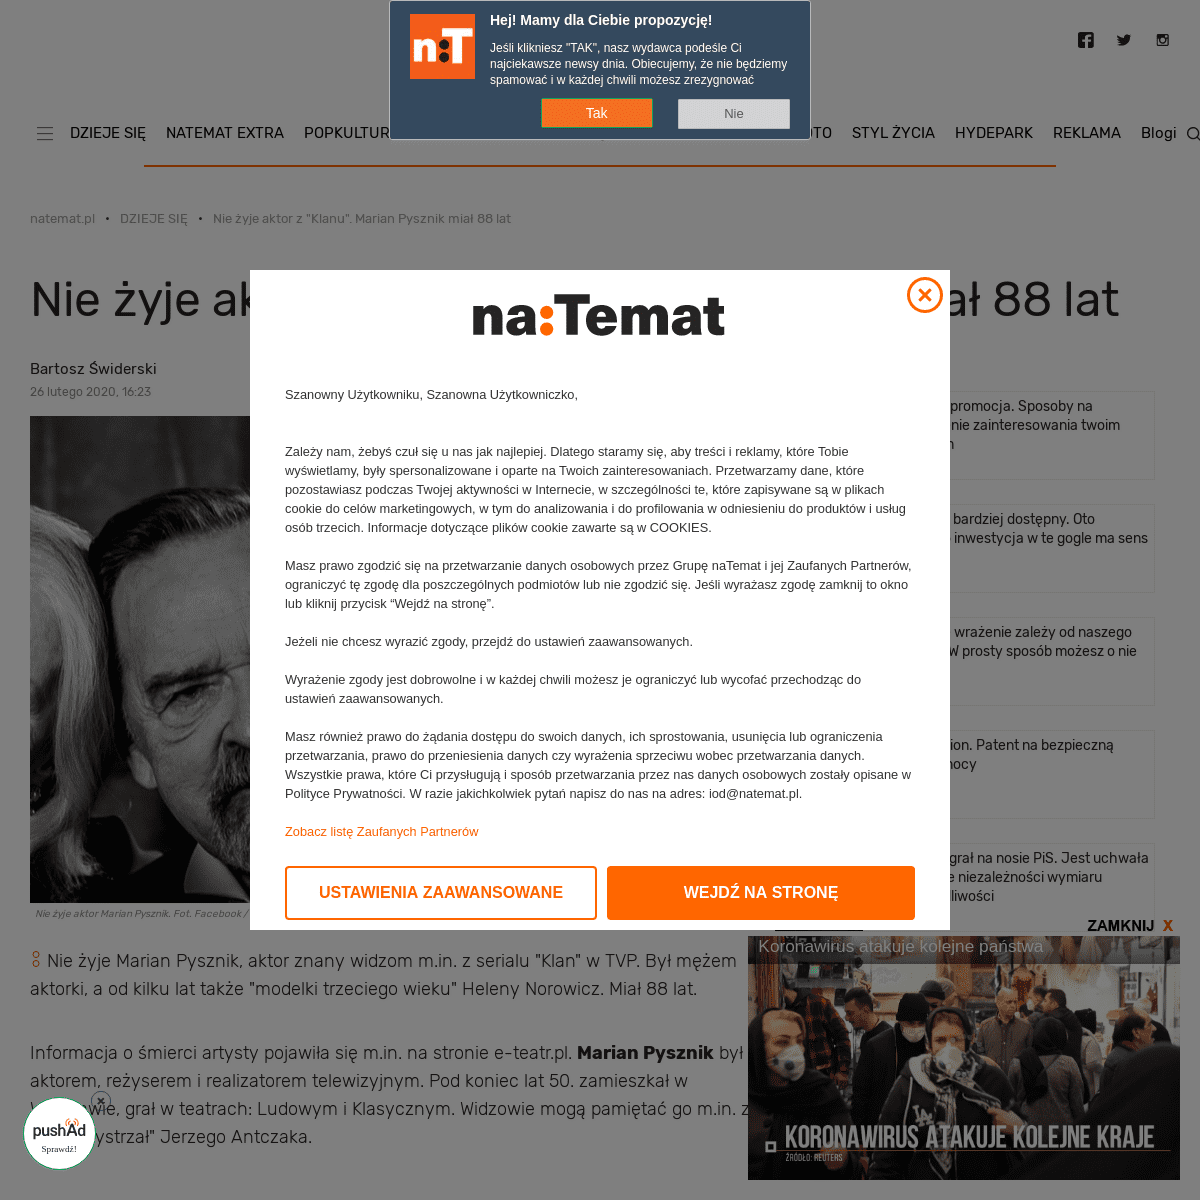 A complete backup of natemat.pl/300659